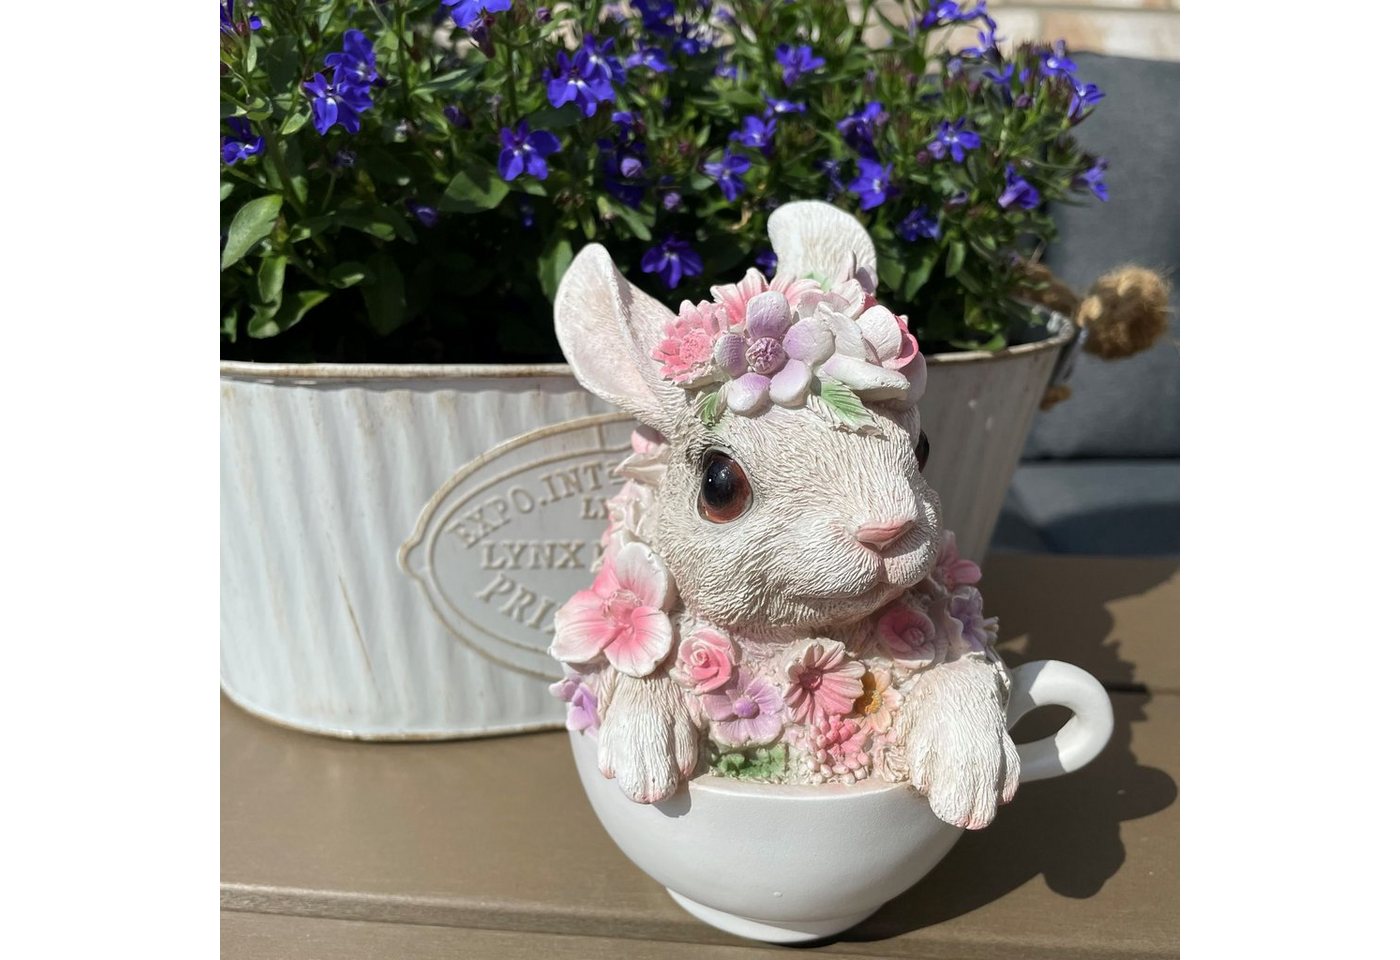 Online-Fuchs Gartenfigur süßer Hase mit Blumen verziert in Tasse, Maße des Tiers ca. 15 cm hoch und 11 x 10 cm breit, Kaninchen von Online-Fuchs